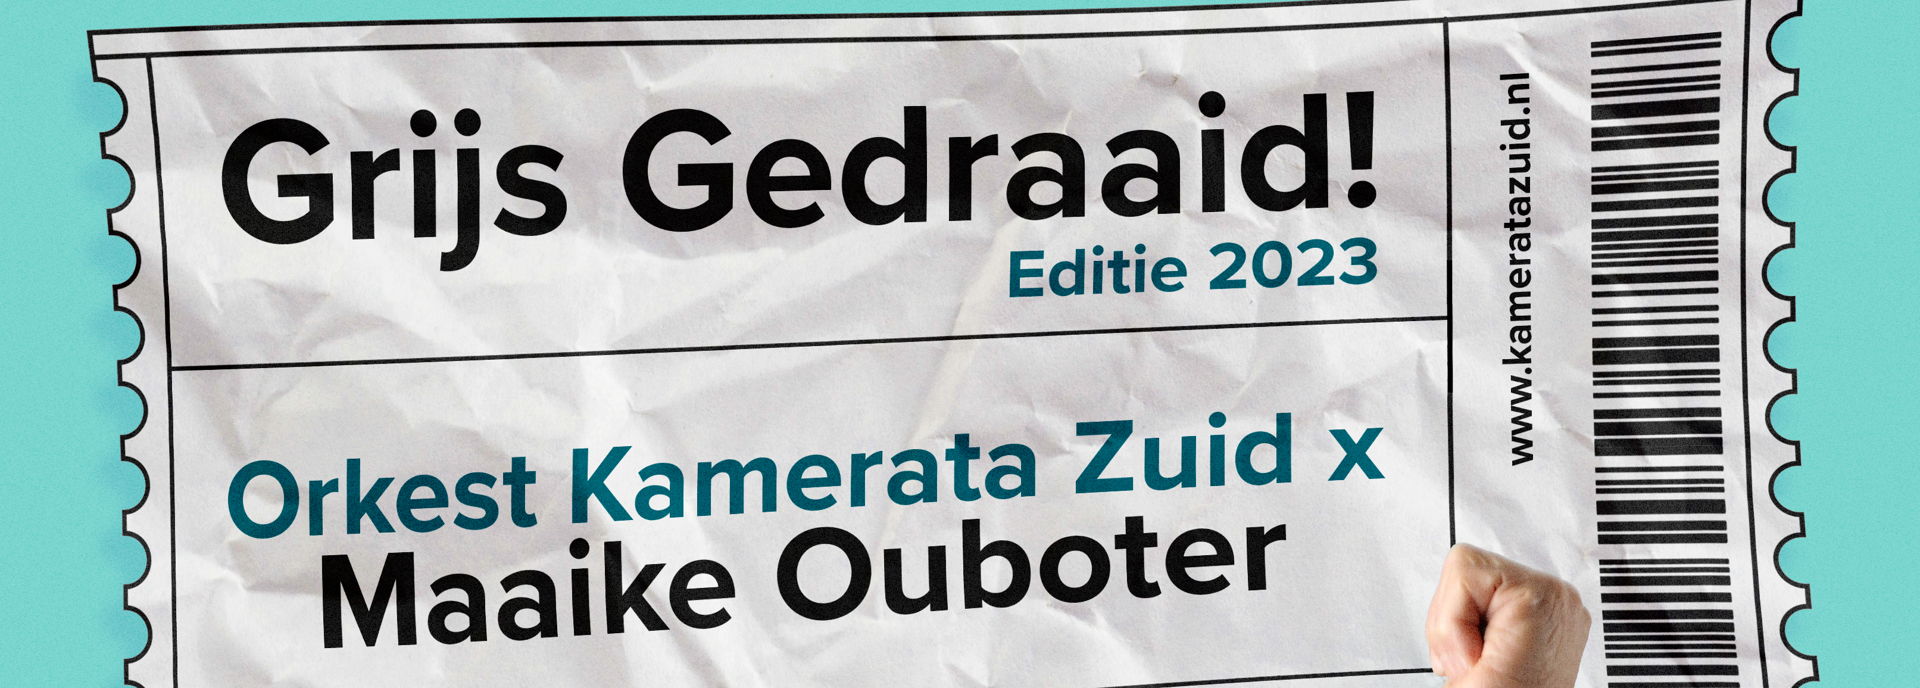 Grijs Gedraaid - 2023 in De Tamboer